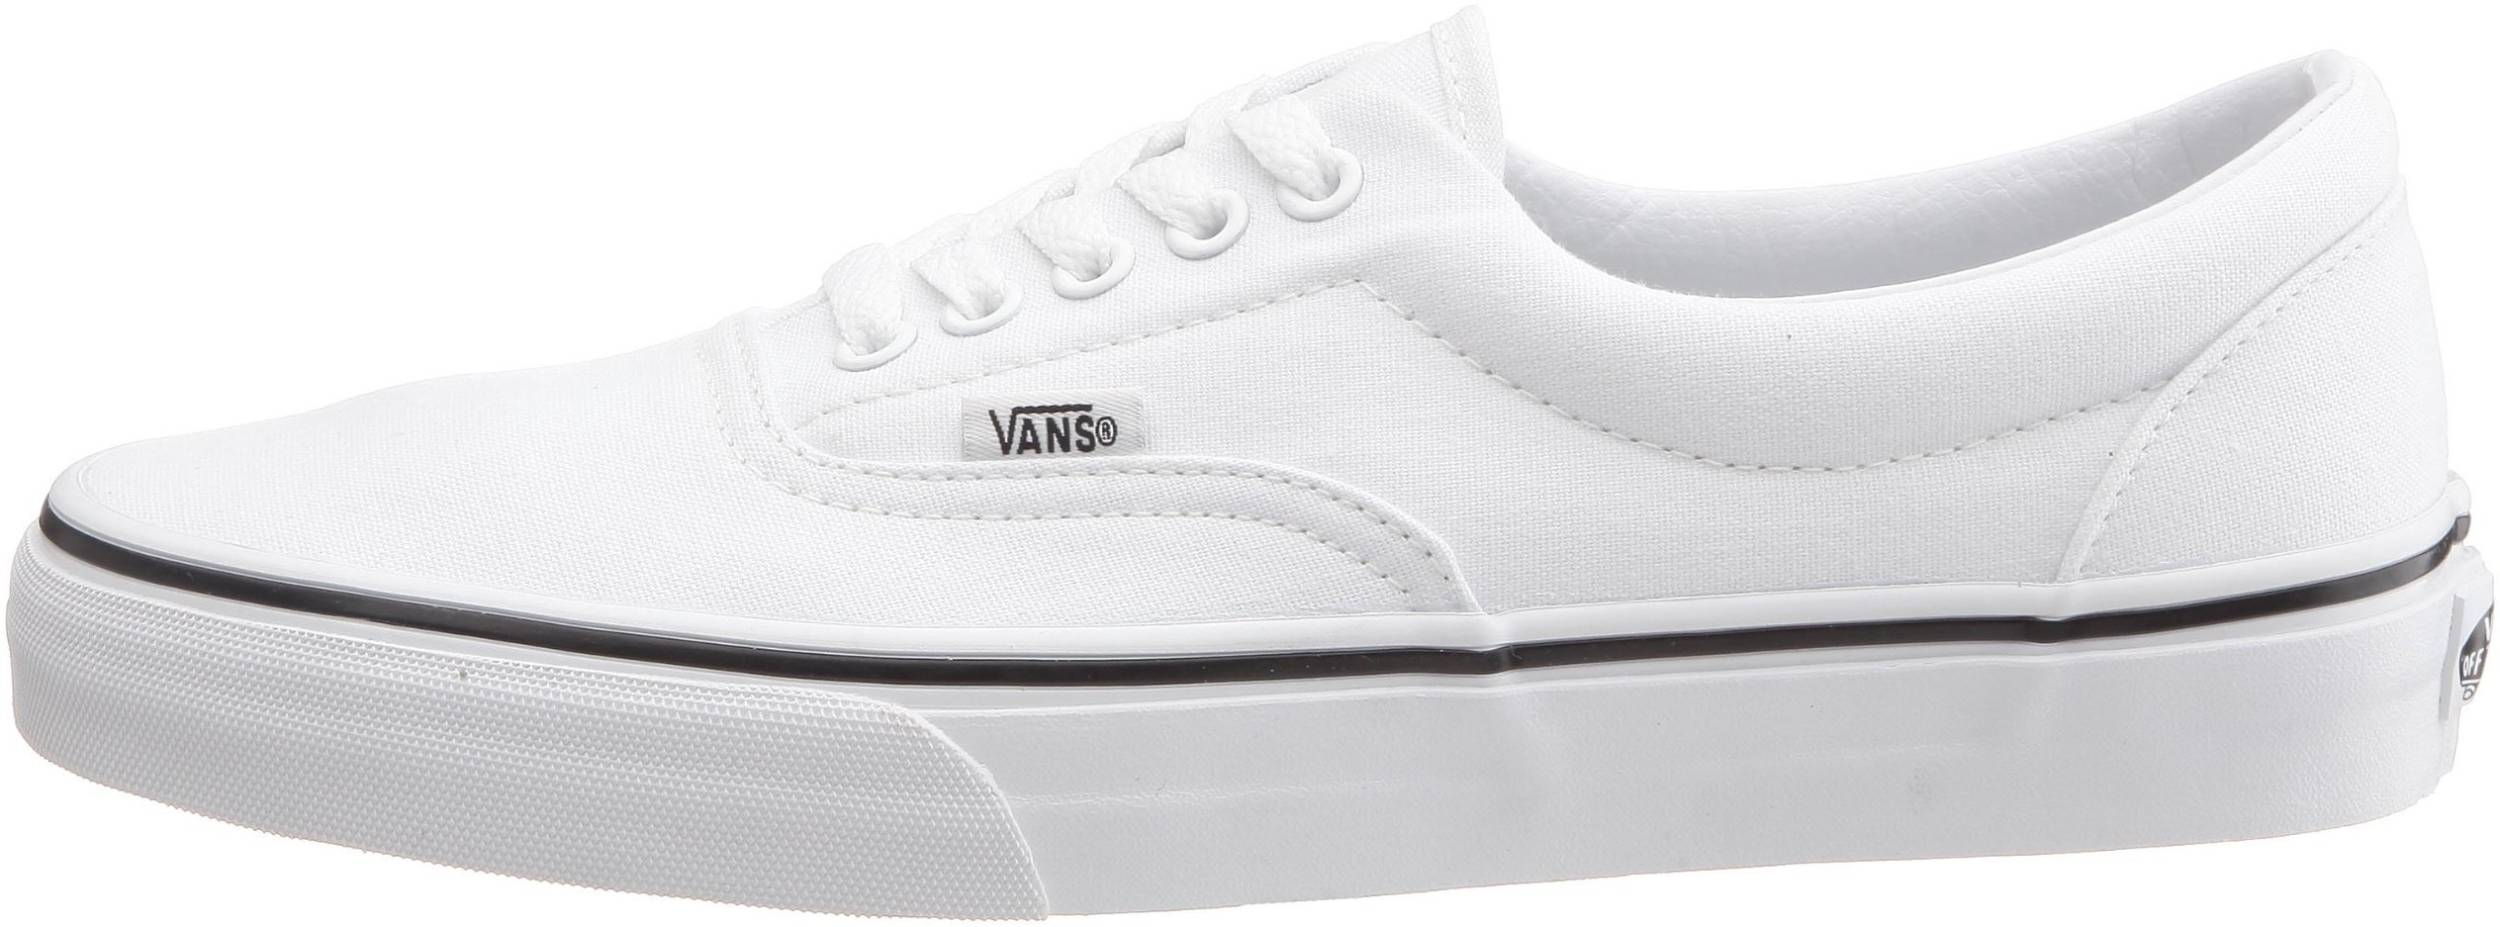 full white vans shoes